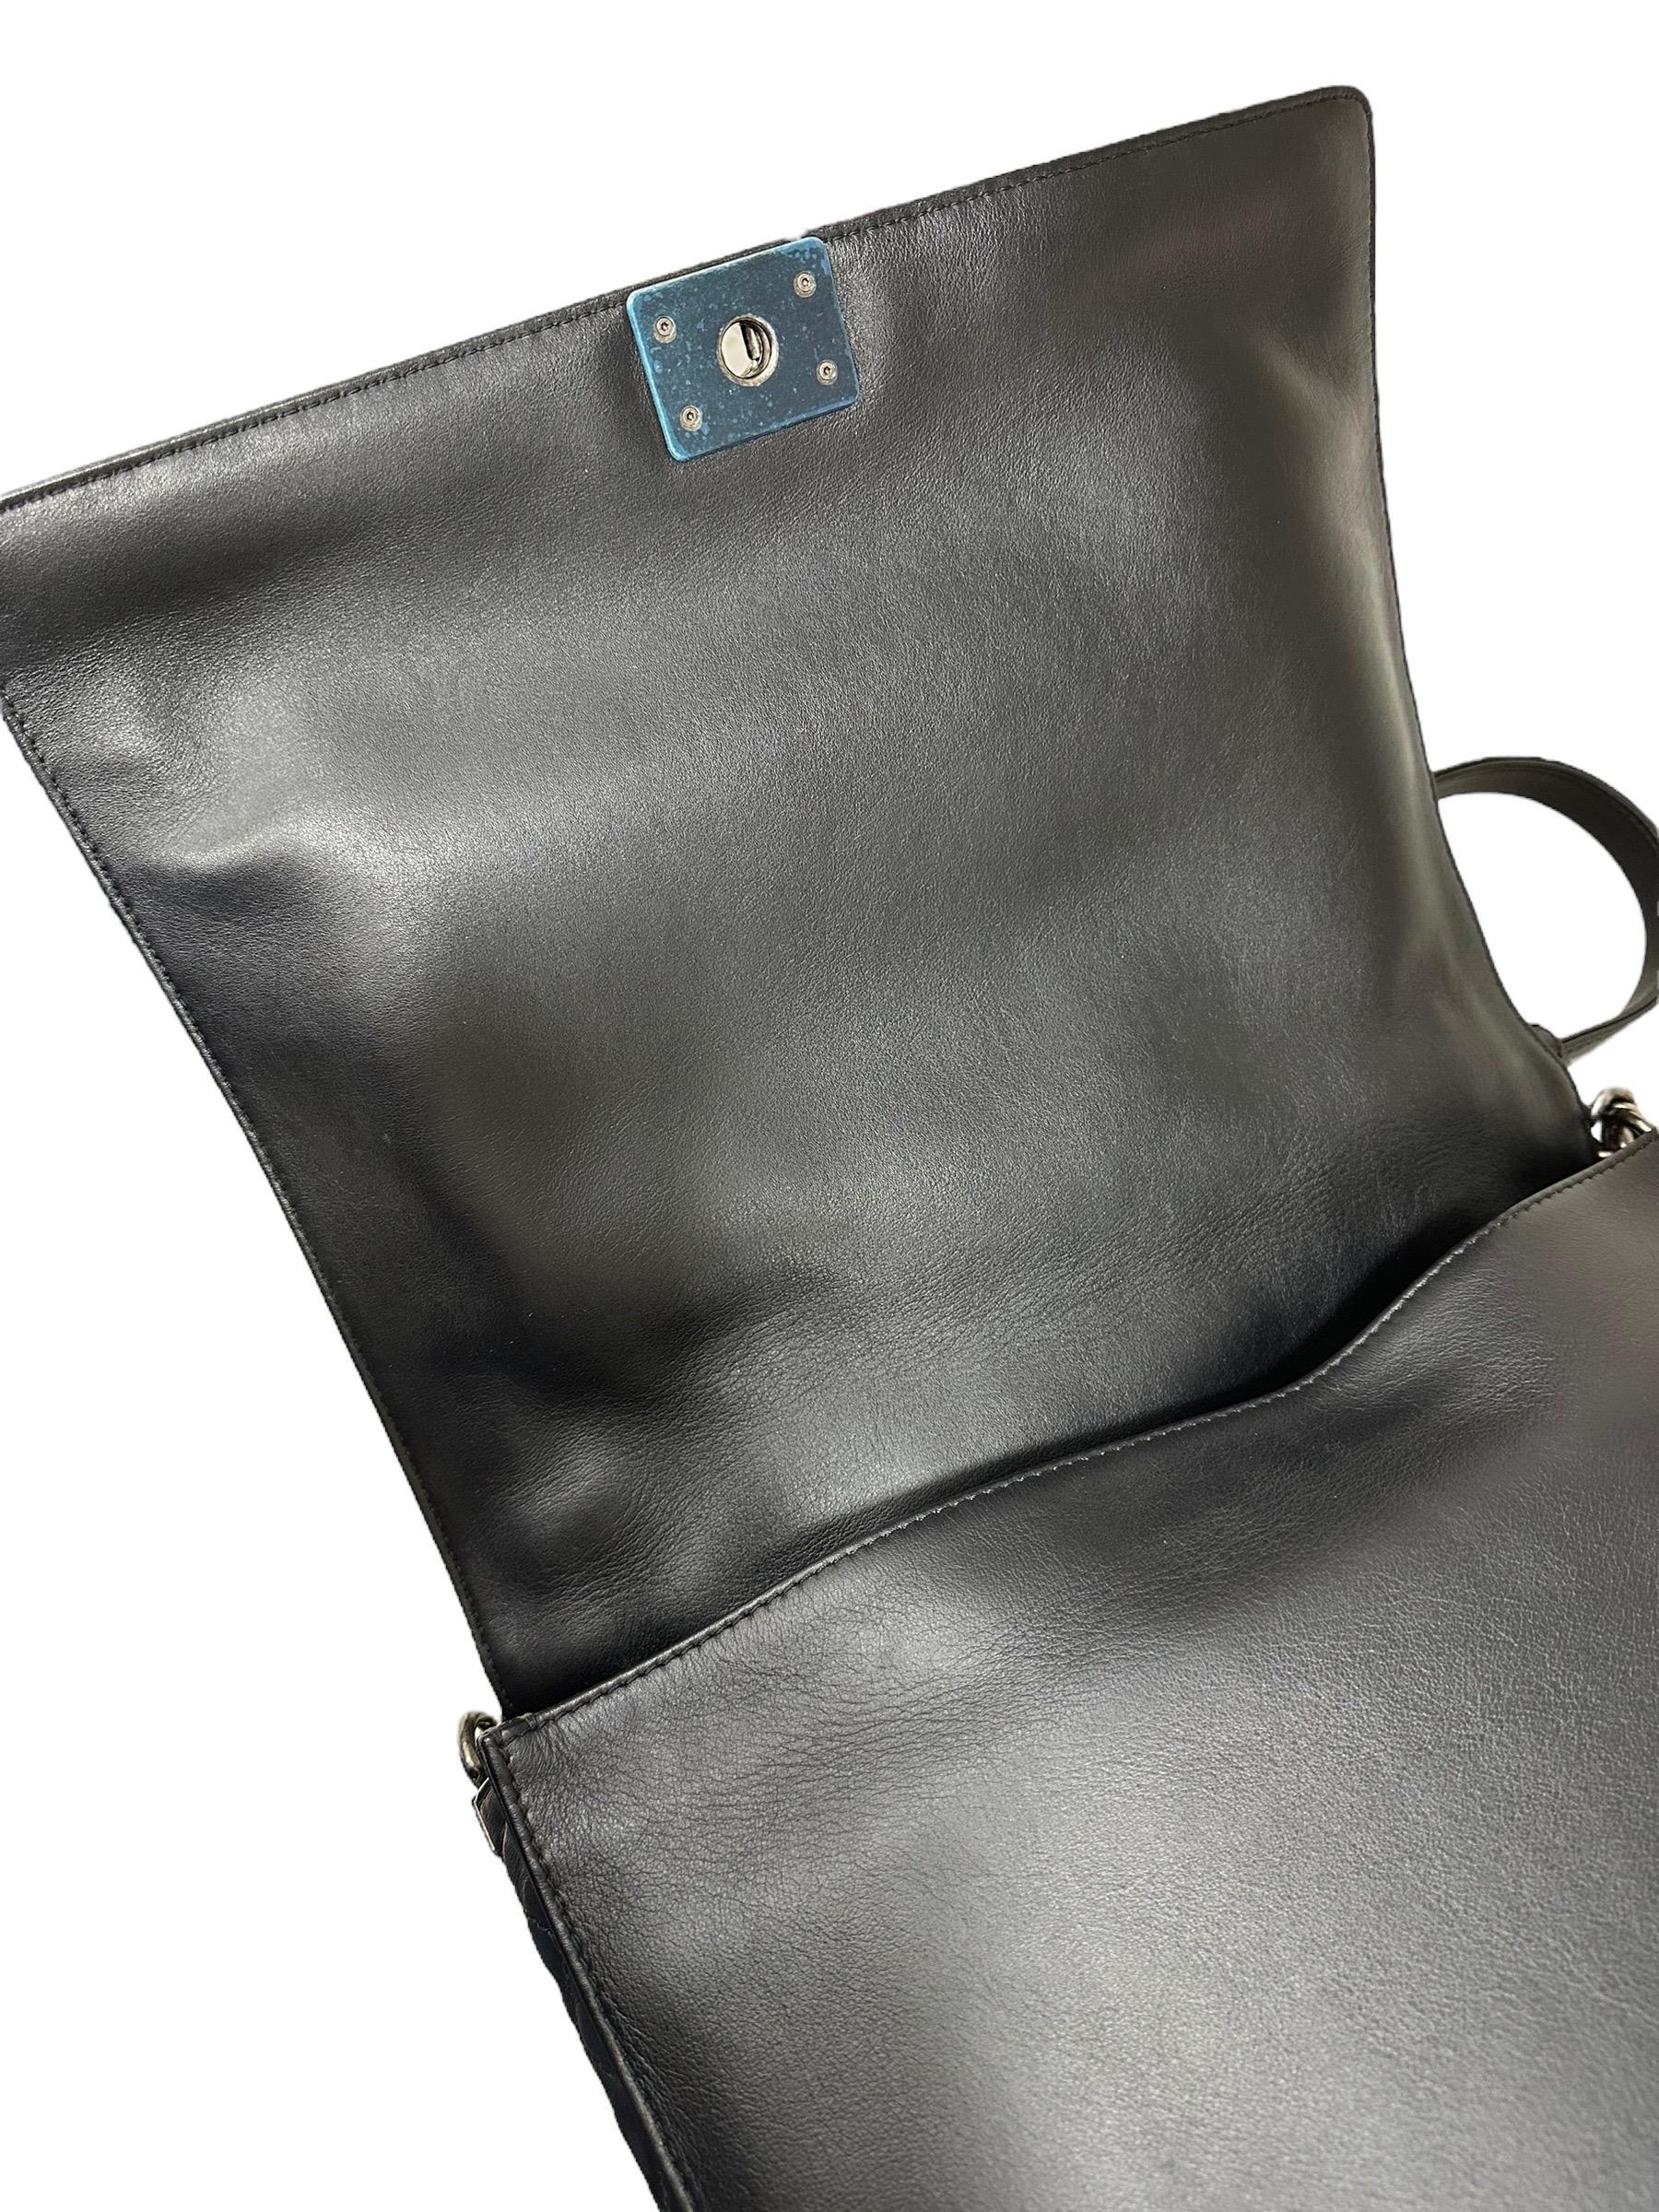 2014 Chanel Boy XL Limited Edition Shoulder Bag Multi Chains 7